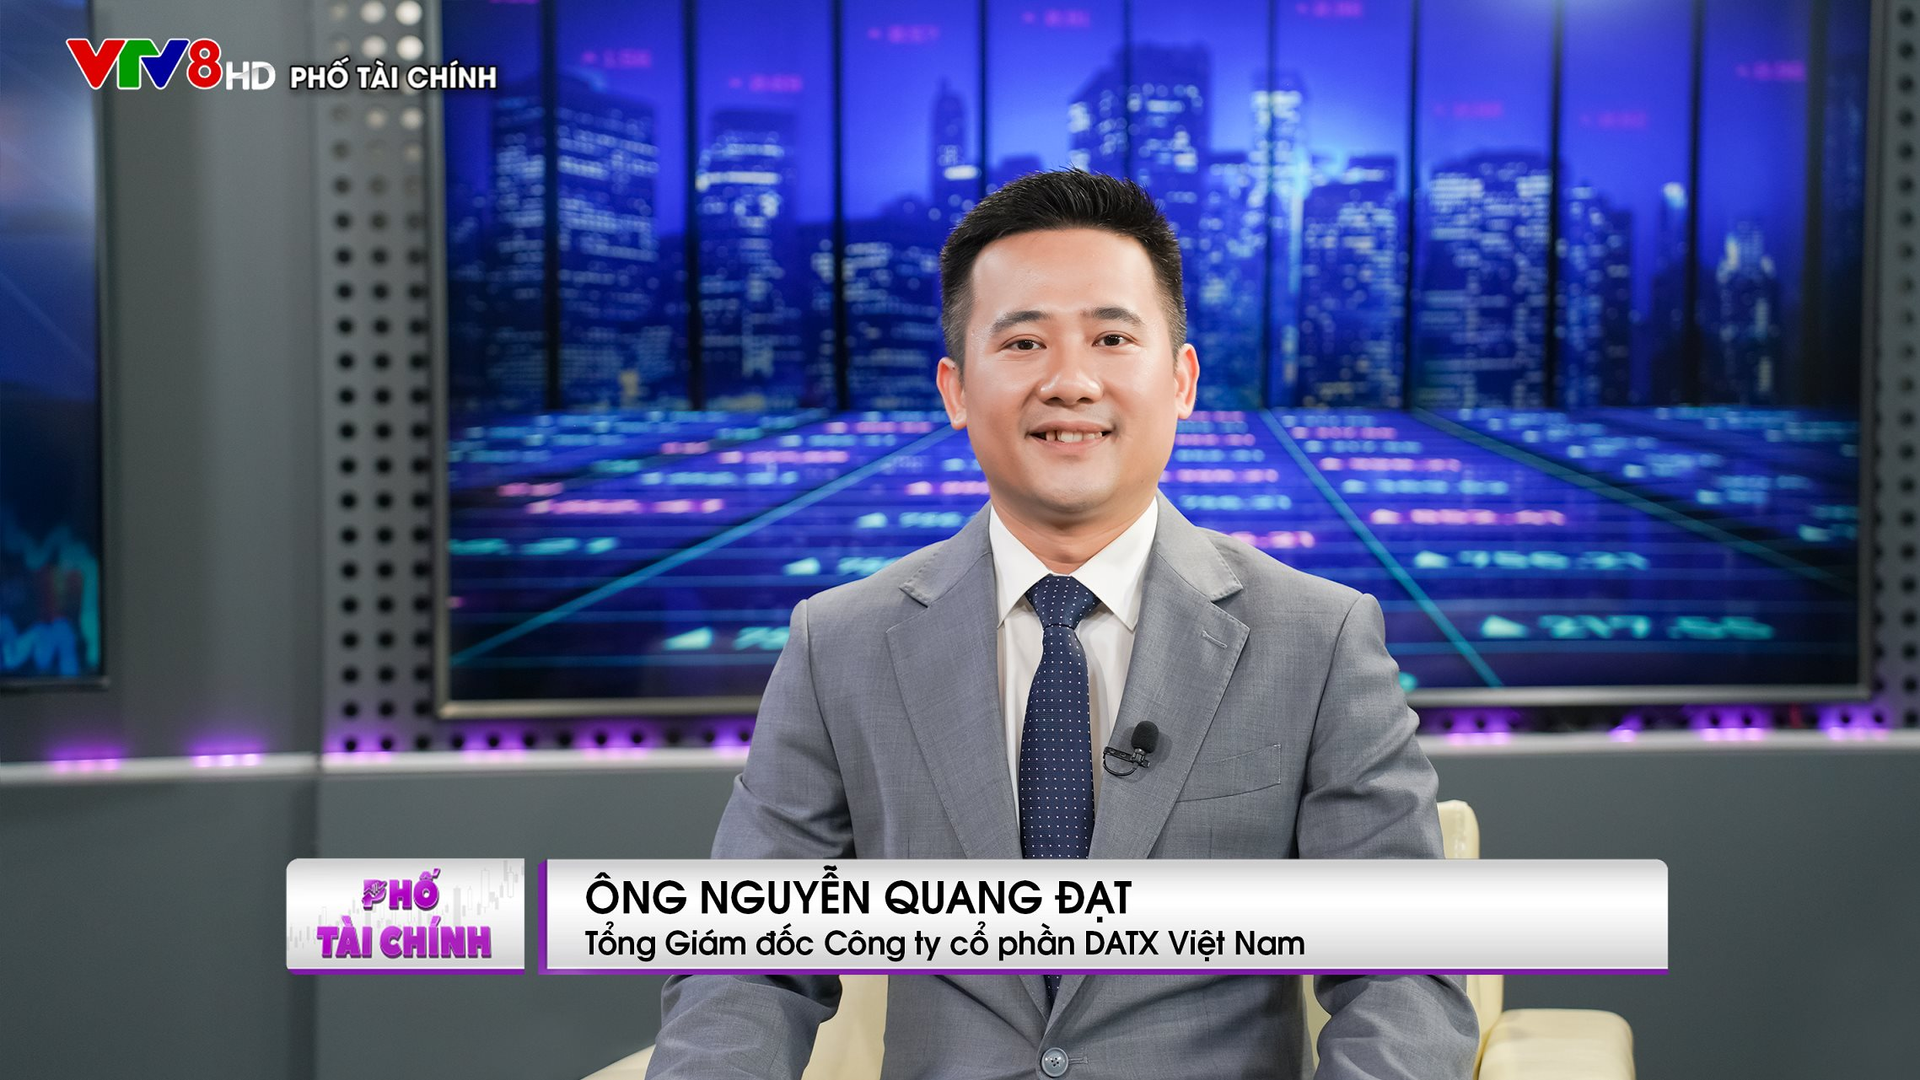 Tổng giám đốc DATX Việt Nam: Chứng khoán phái sinh đang giúp thị trường cơ sở đỡ giảm sâu trong những đợt biến động lớn